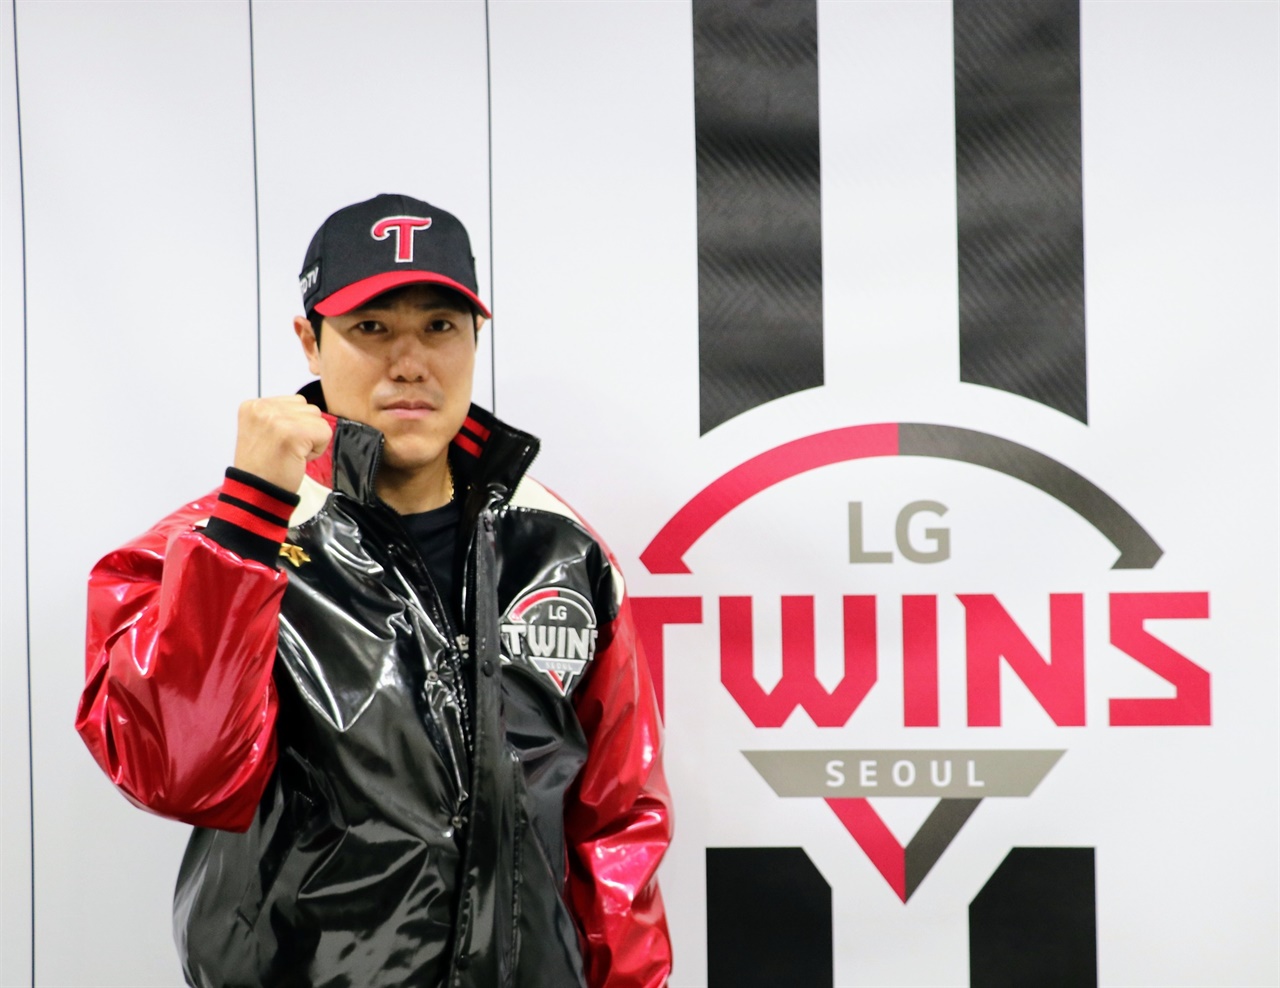  지난 시즌 이후 NC로부터 재계약 불가 통보를 받고 LG와 손을 잡은 우완 투수 김진성